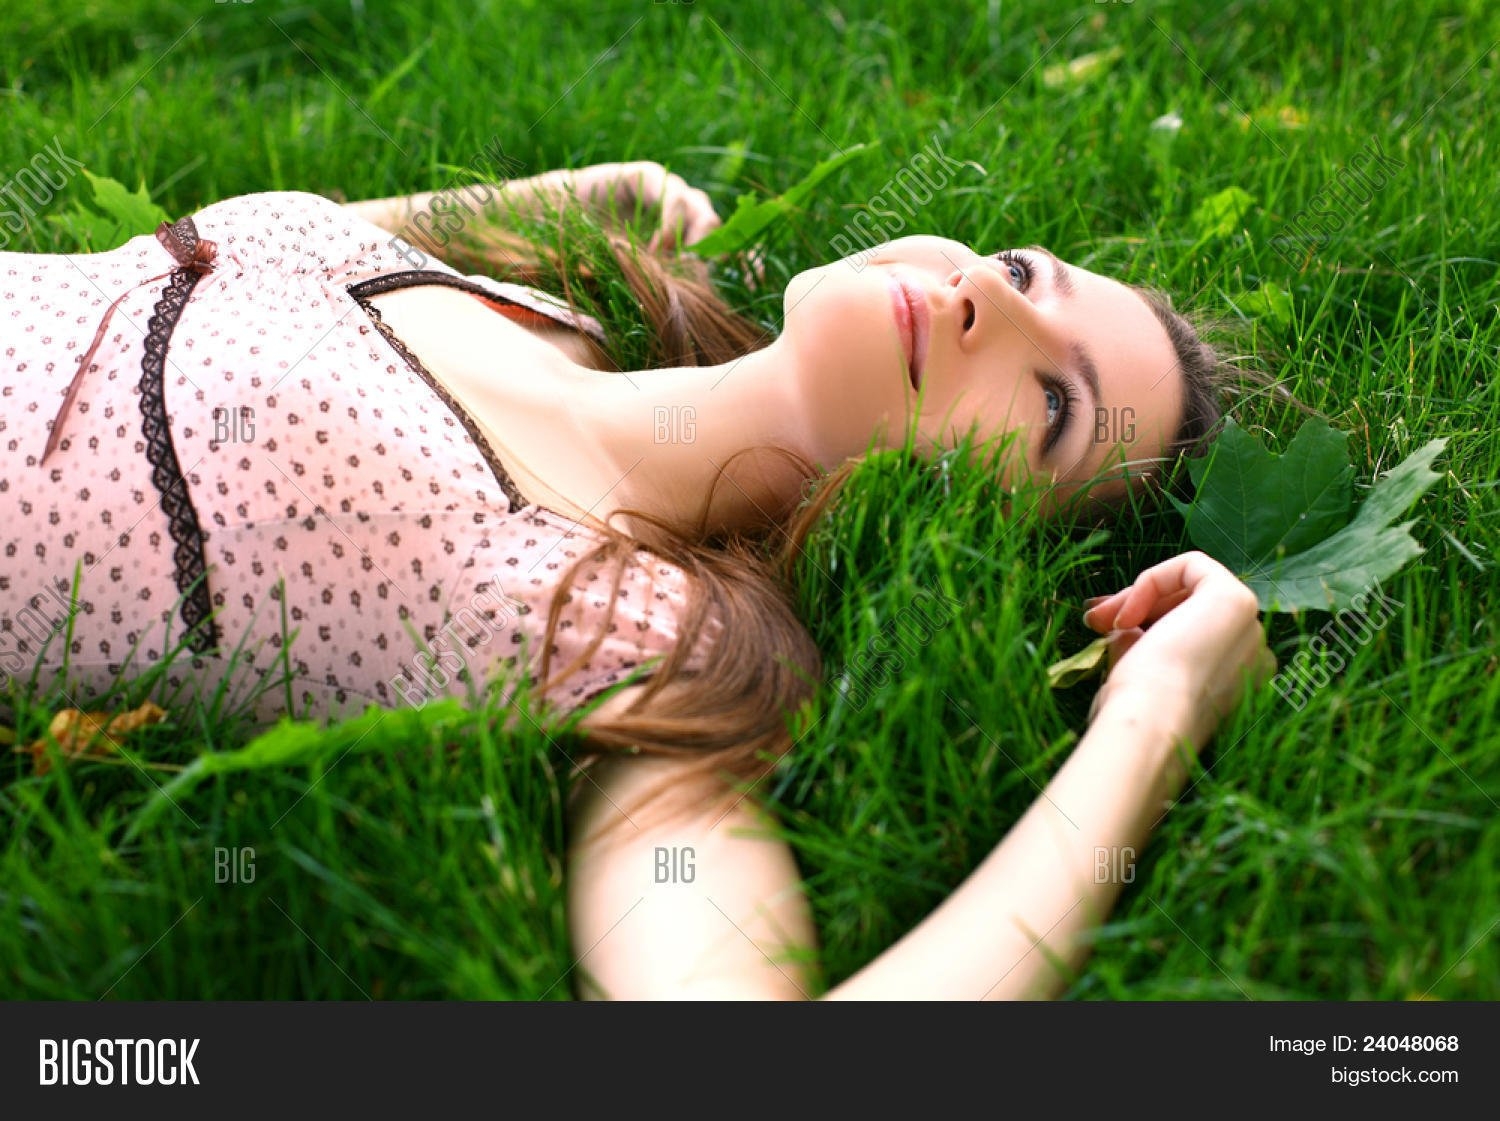 Лежу фото. Лежит на траве. Девушки лежа. Женщина лежит на траве. Девушка в траве.